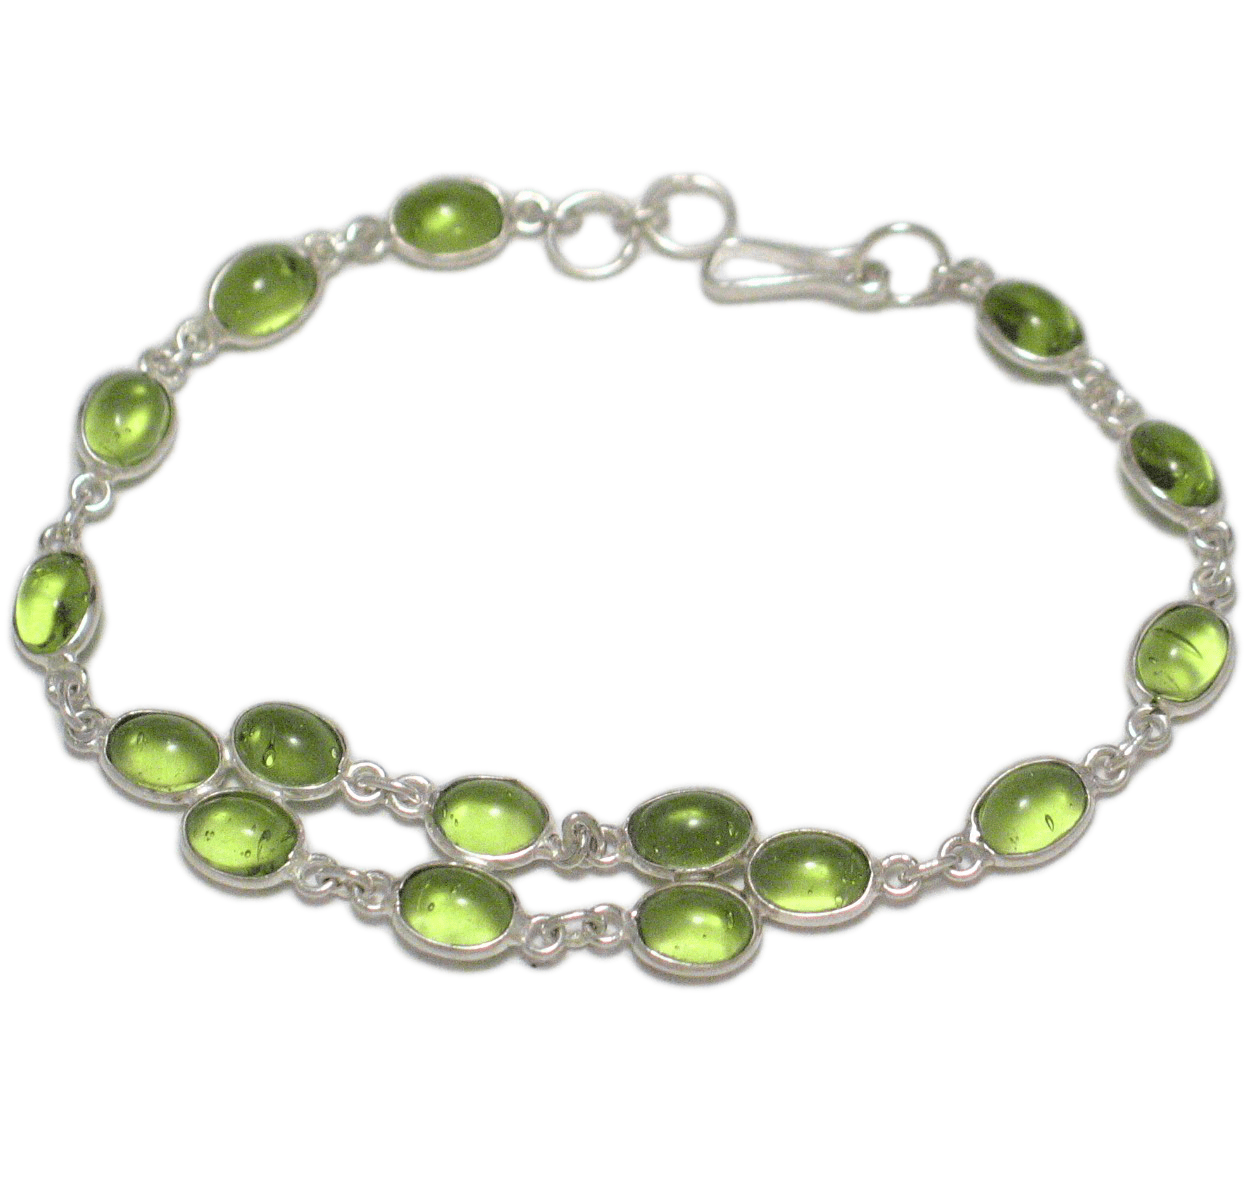 Tennis Bracelet, Sterling Silver 8.5" Vibrant Limon Green Stone Tennis Bracelet - Blingschlingers Jewelry